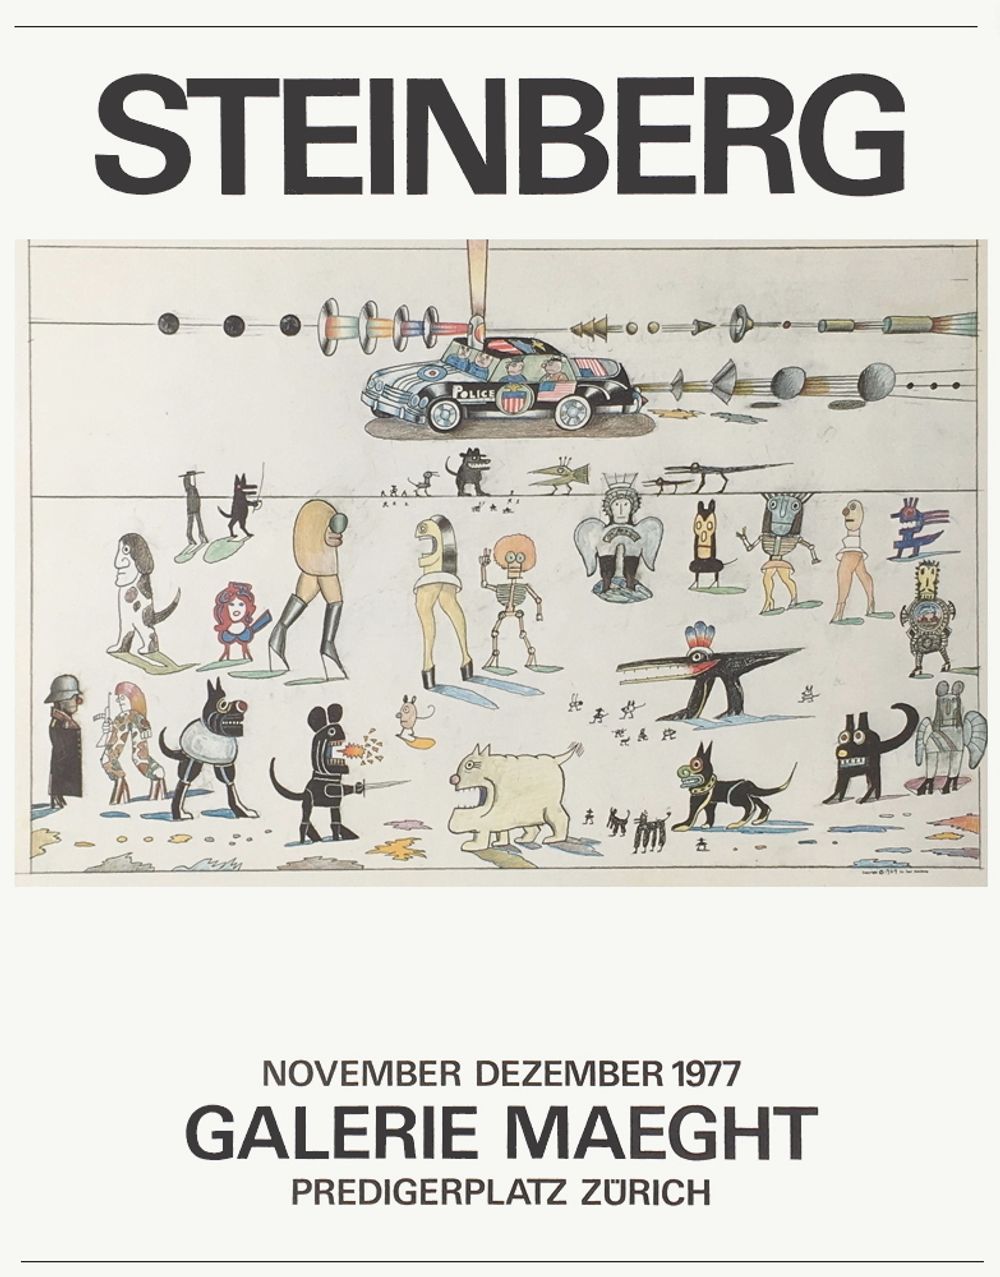 激安売品Saul Steinberg Expo Galerie Maeght Poster, 1970 石版画、リトグラフ